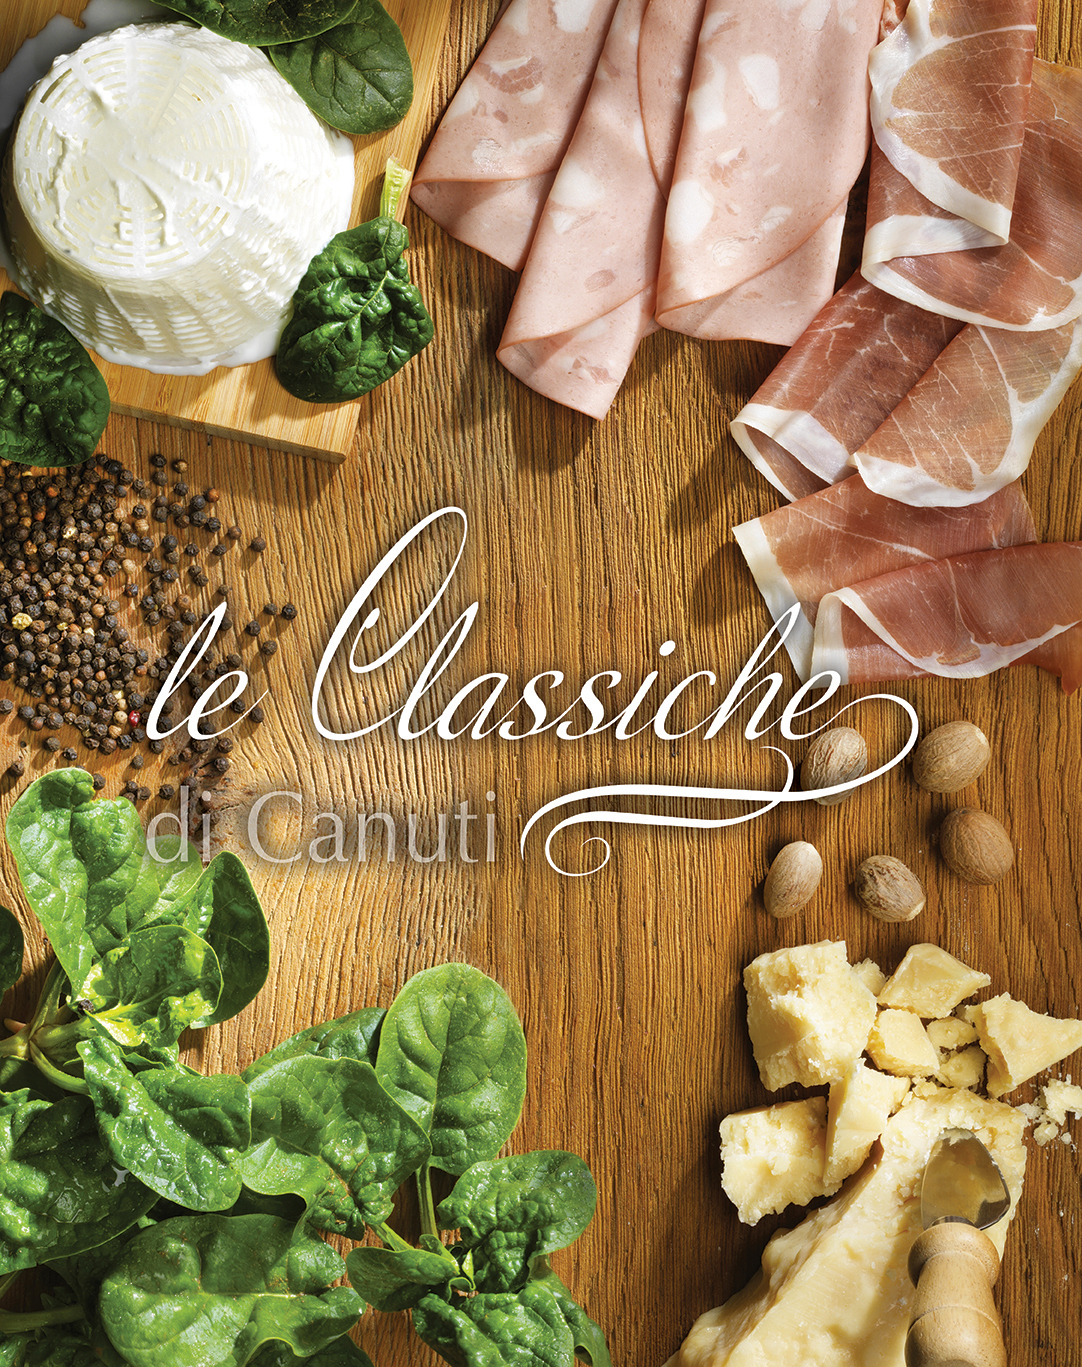 Breite Produktpalette mit kurzen und langen Nudeln, Teigtaschen, Gnocchi und Angeboten für die Gastronomie.